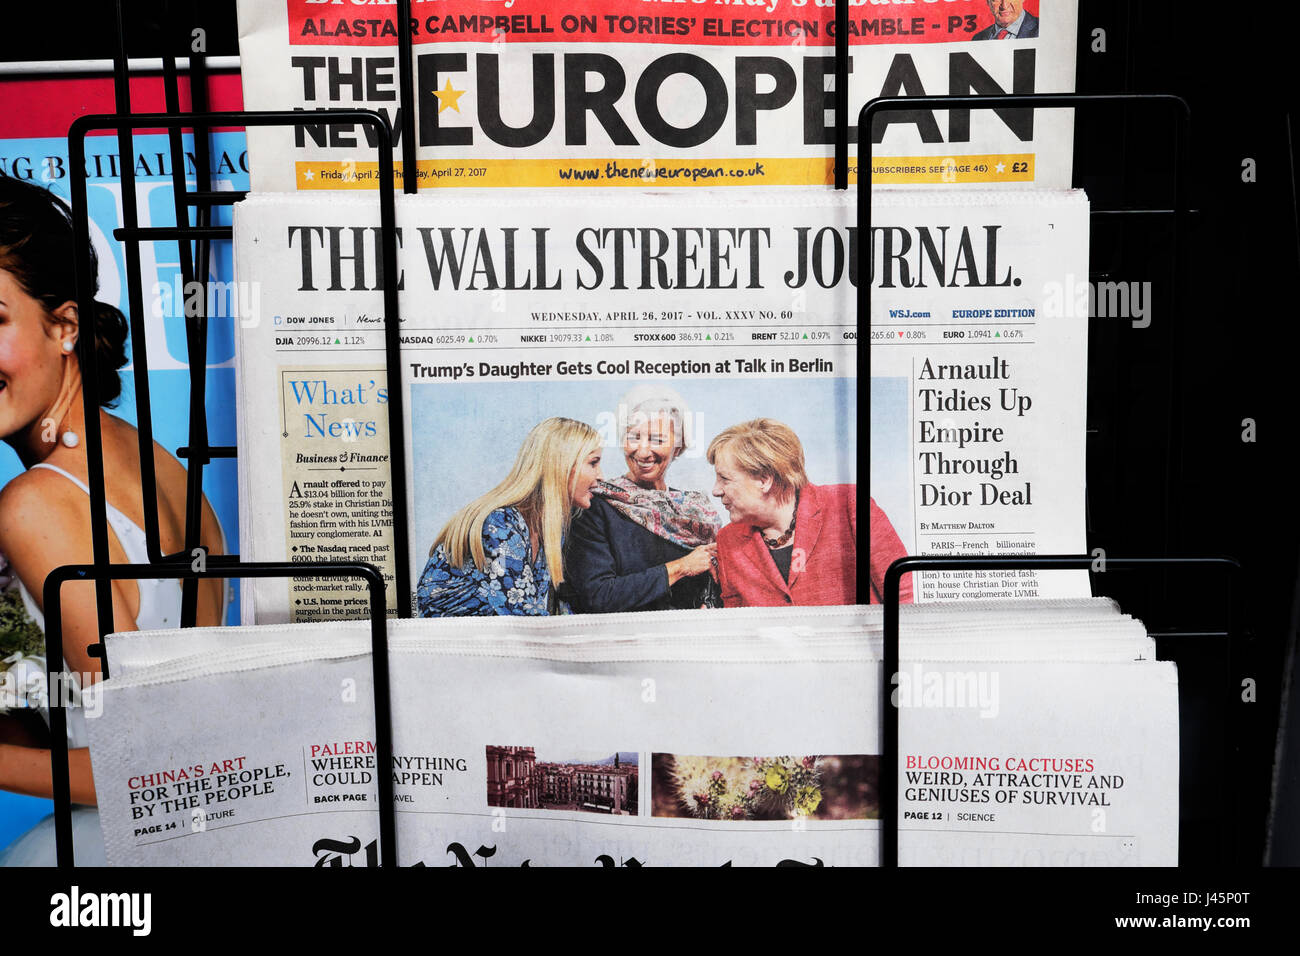 "Trump della figlia si raffreddi la ricezione a parlare a Berlino' articolo del Wall Street Journal giornale in edicola il 26 aprile 2017 LONDON REGNO UNITO Foto Stock